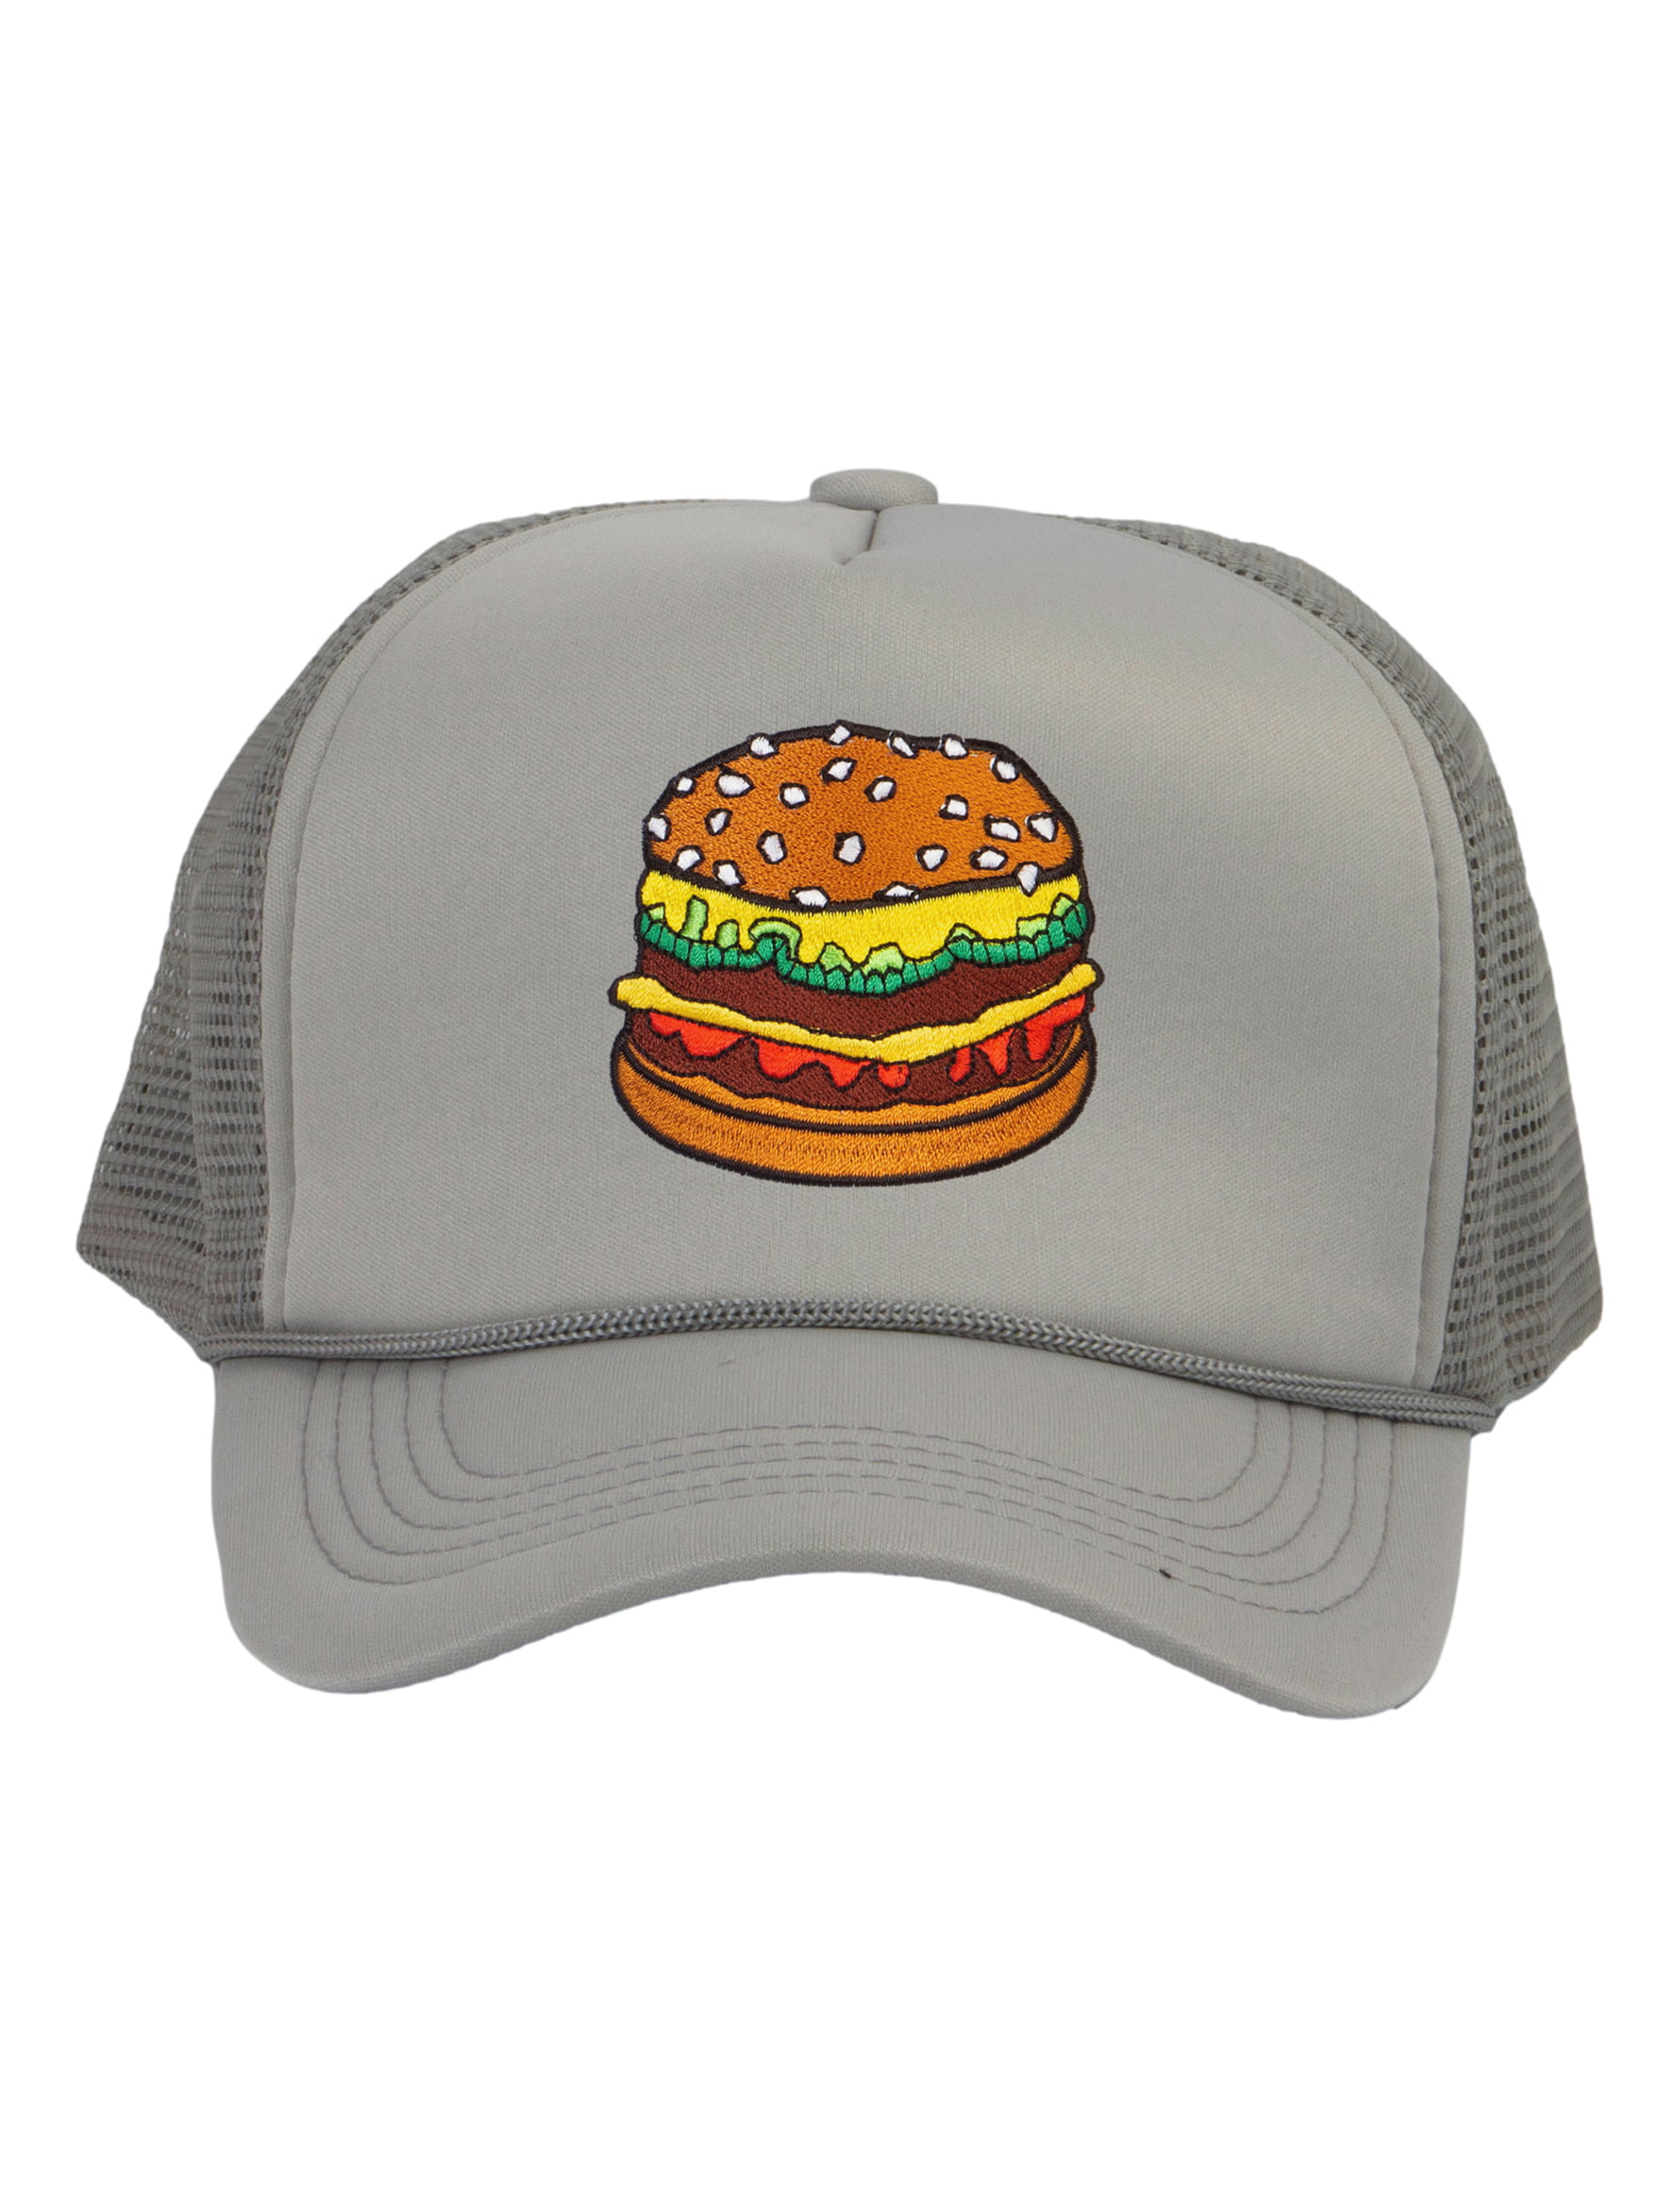 Top Headwear Hamburger Cheeseburger Trucker Hat - Men's Snapback Burger  Food Cap Light Grey